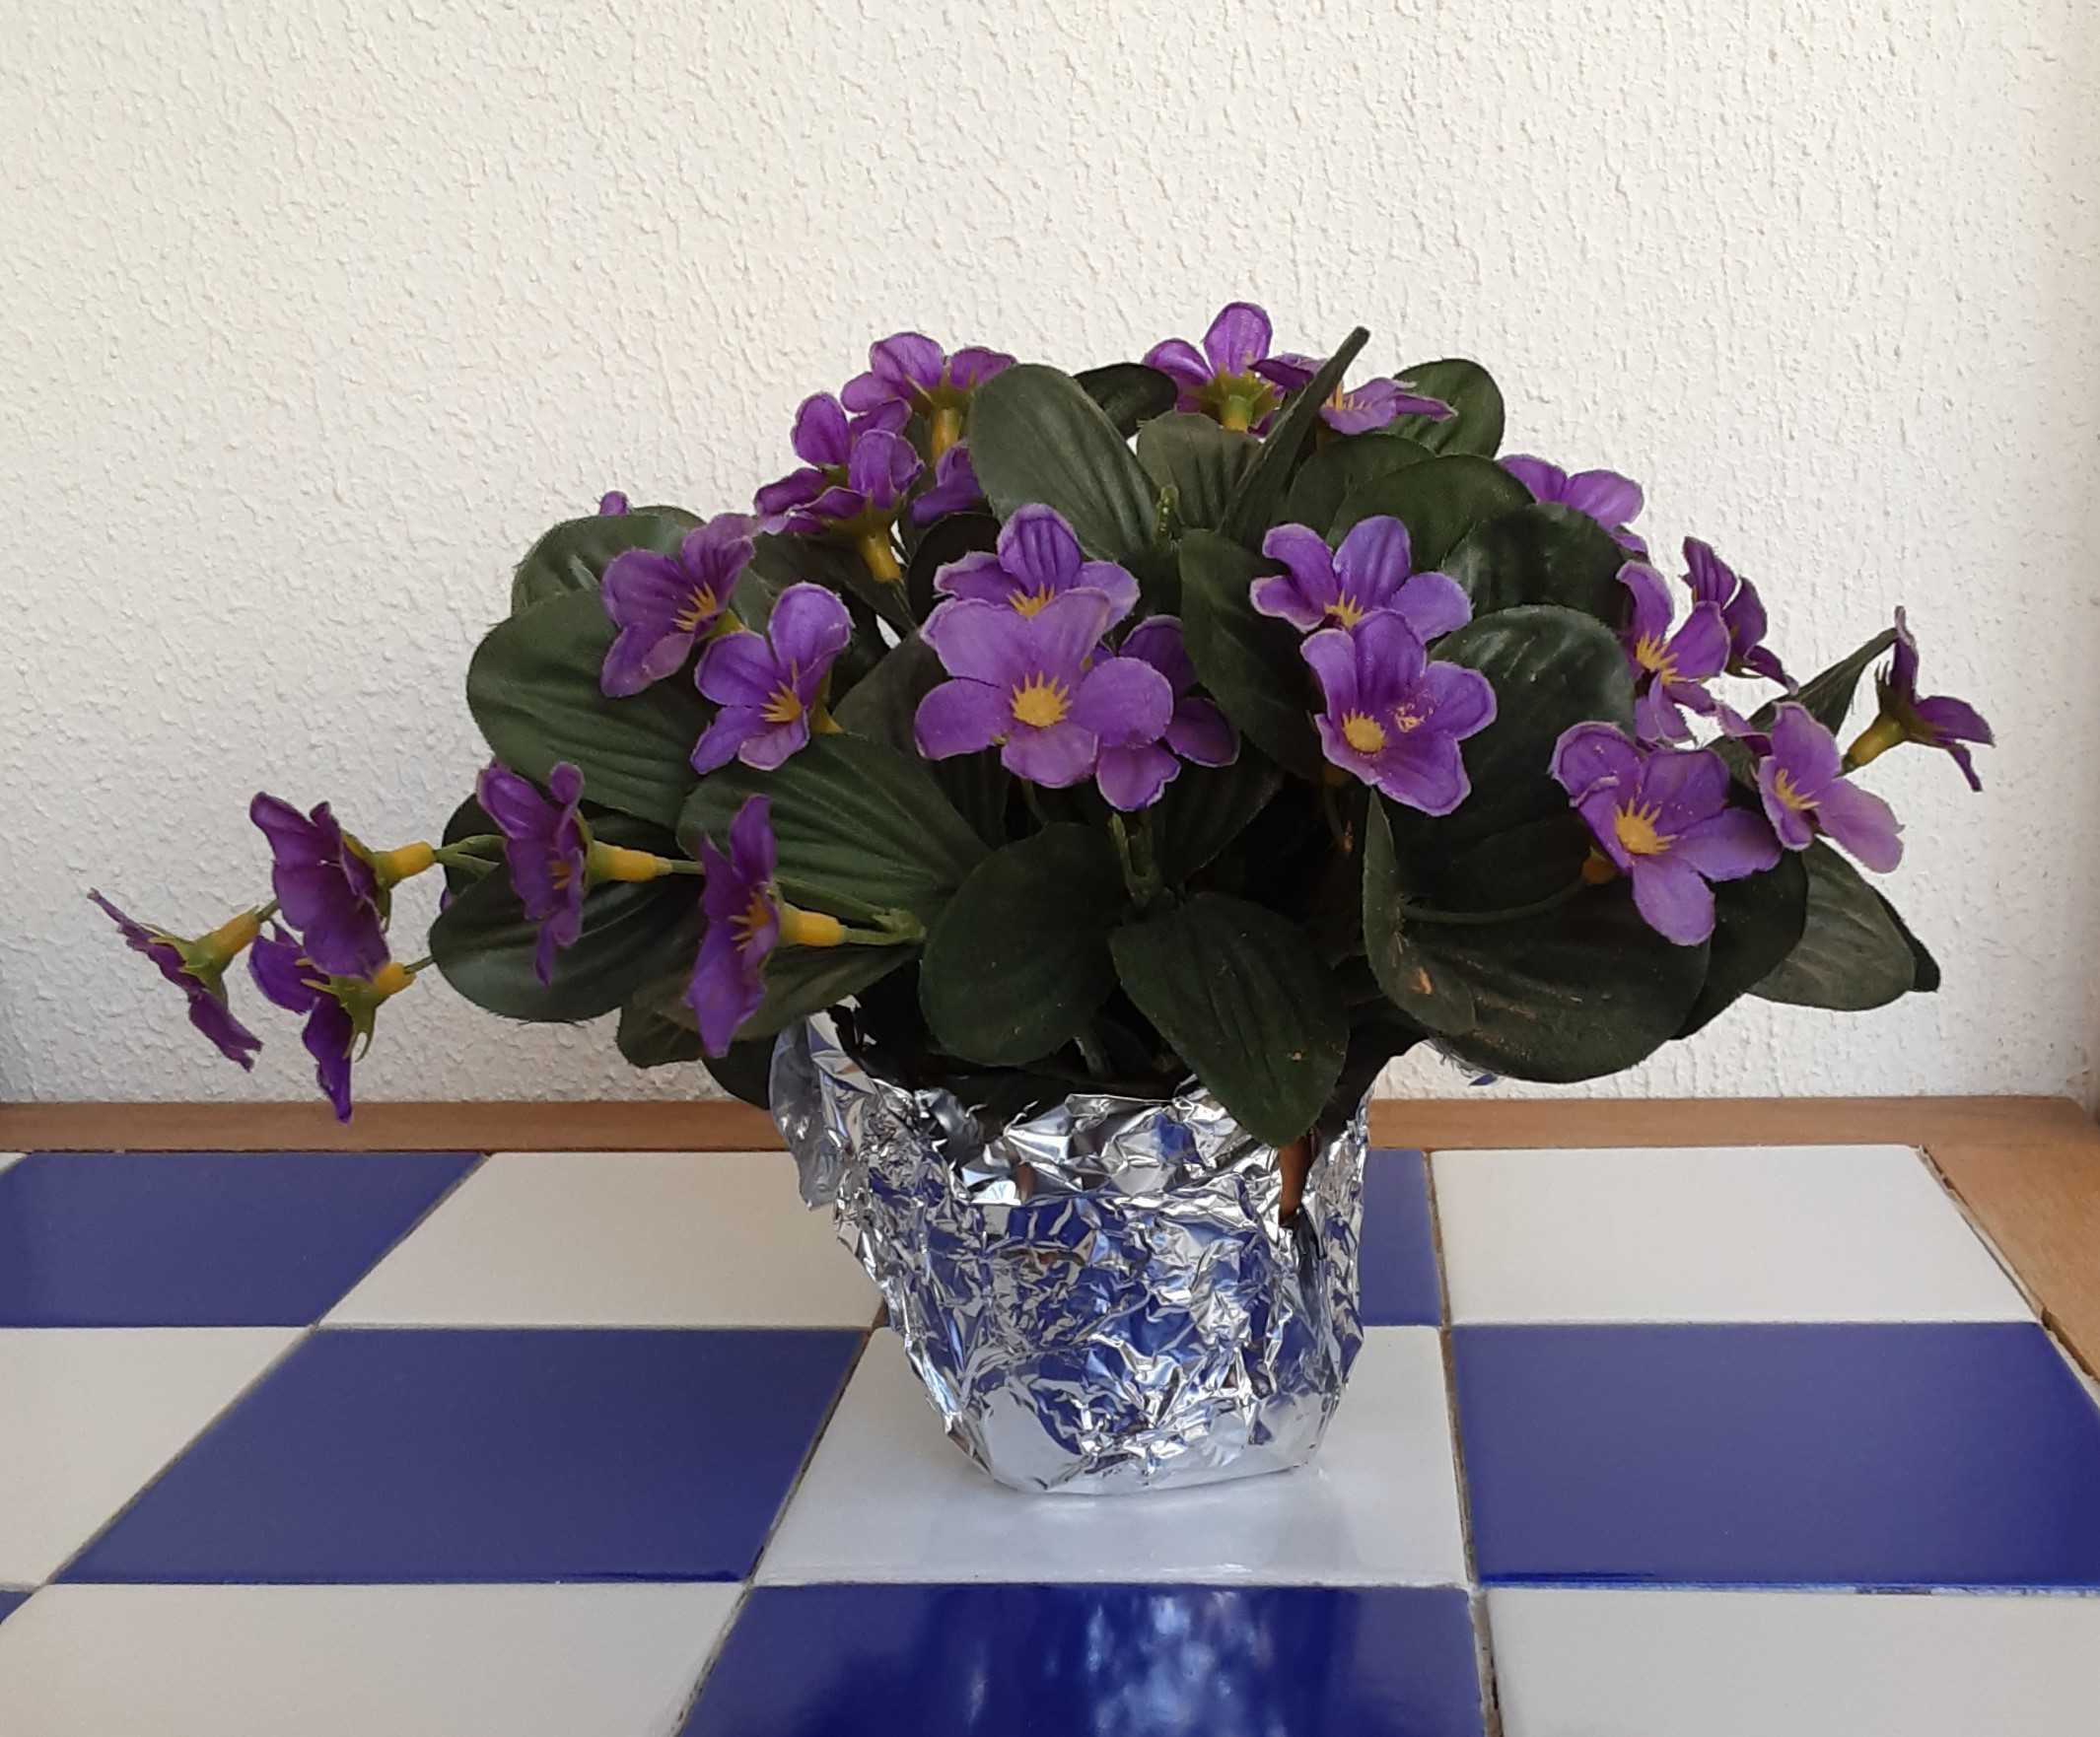 Flores Artificiais Decorativas - Entre 2,50€ e 3,50€!